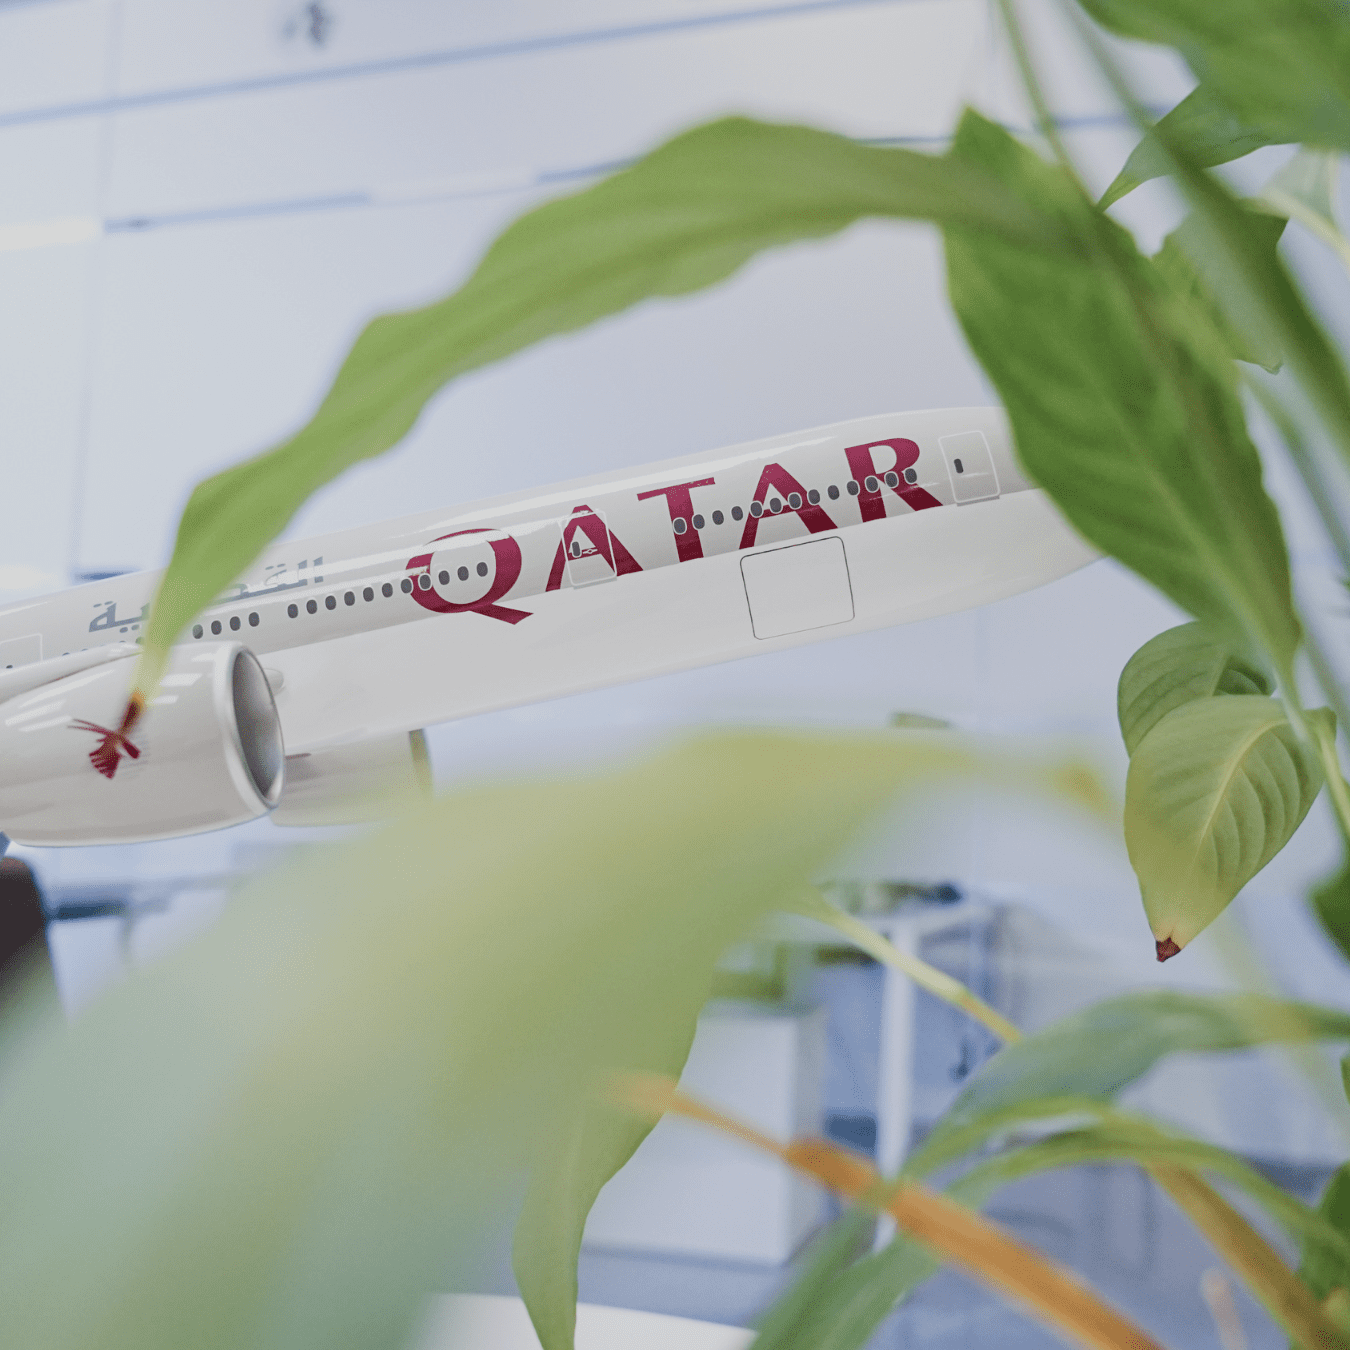 Qatar Airways Company